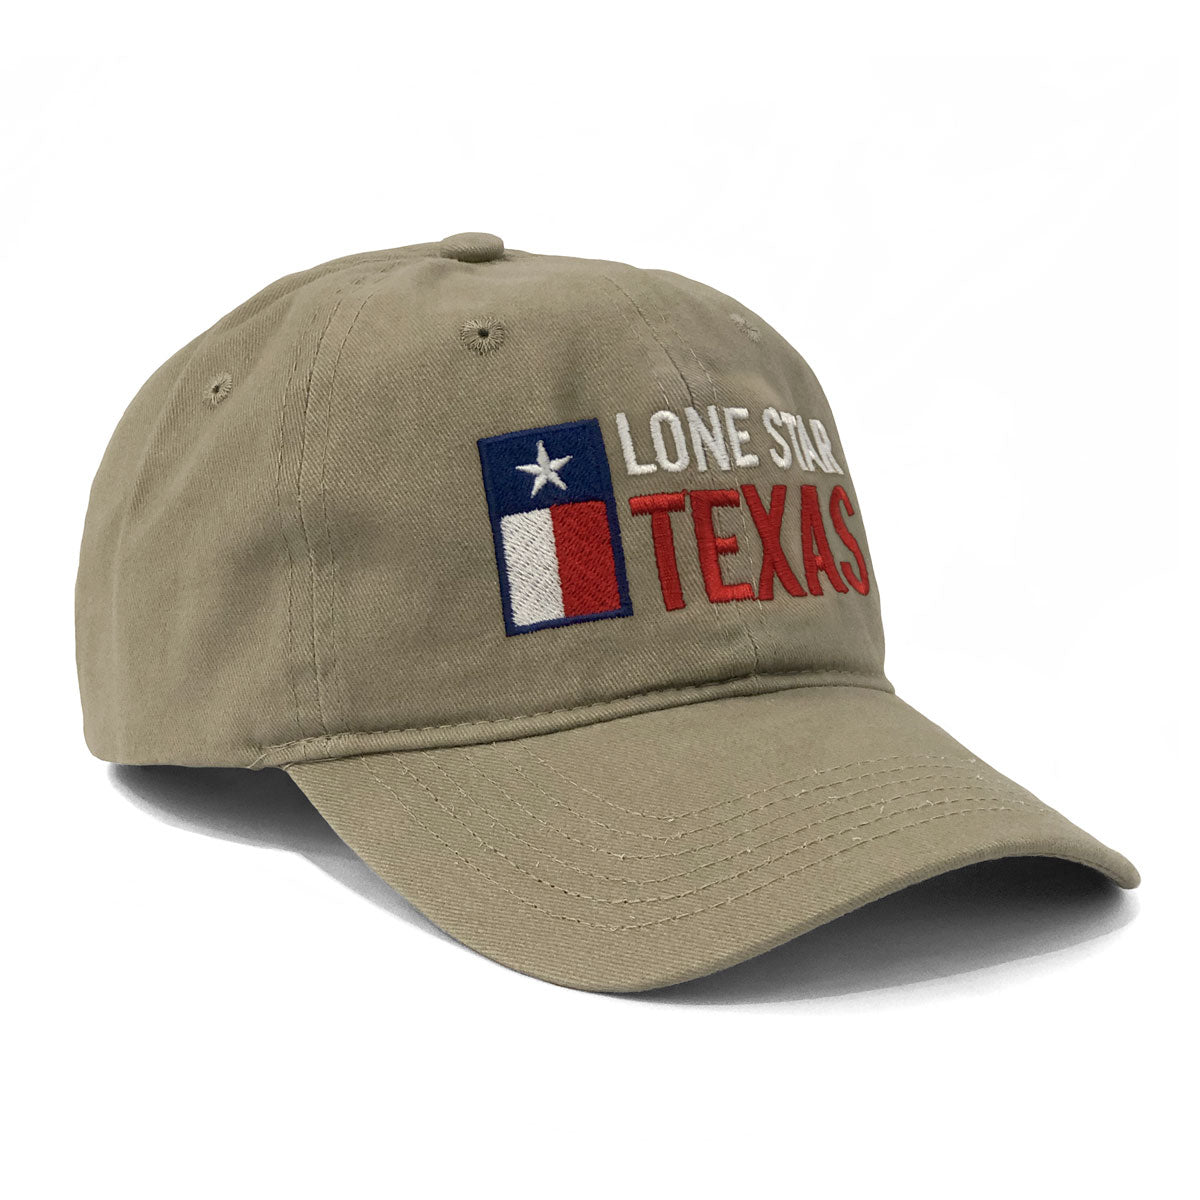 Lone Star Texas Cap